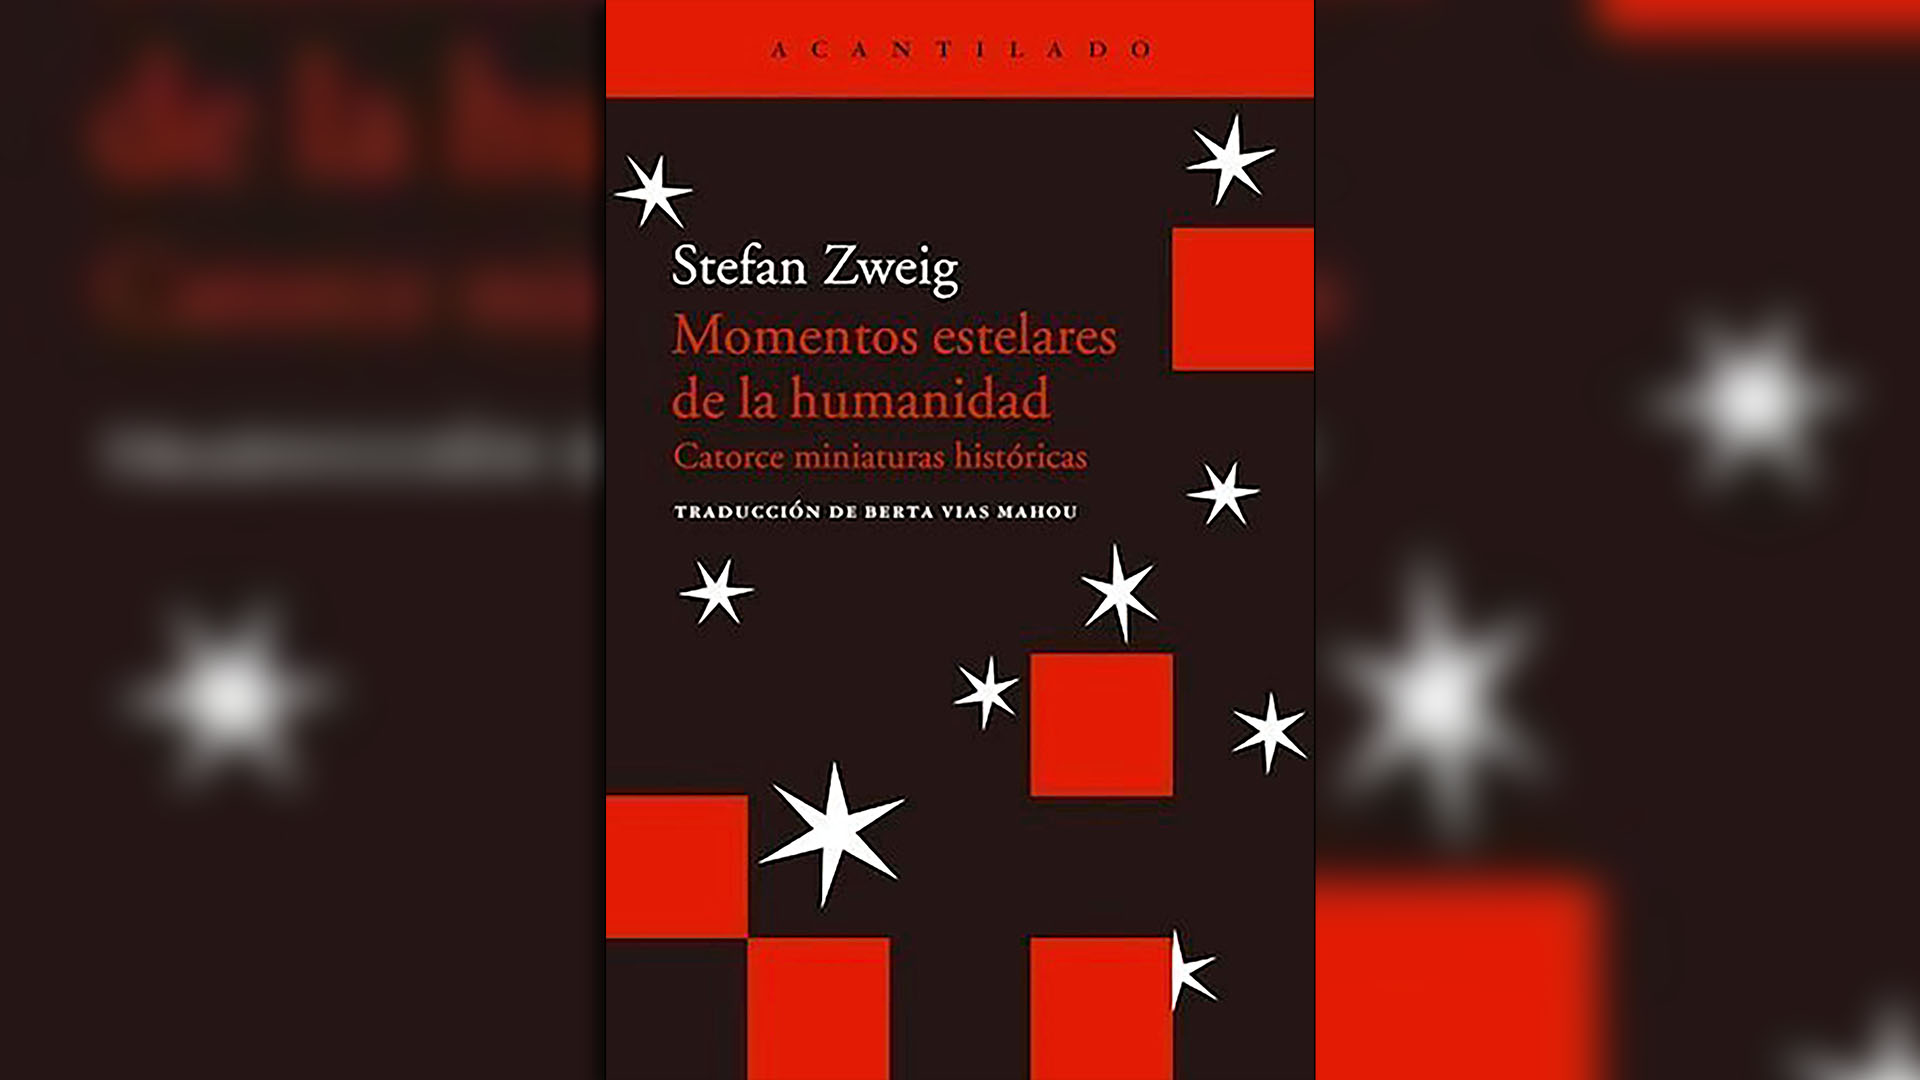 Portada de "Momentos estelares de la humanidad", de Stefan Zweig